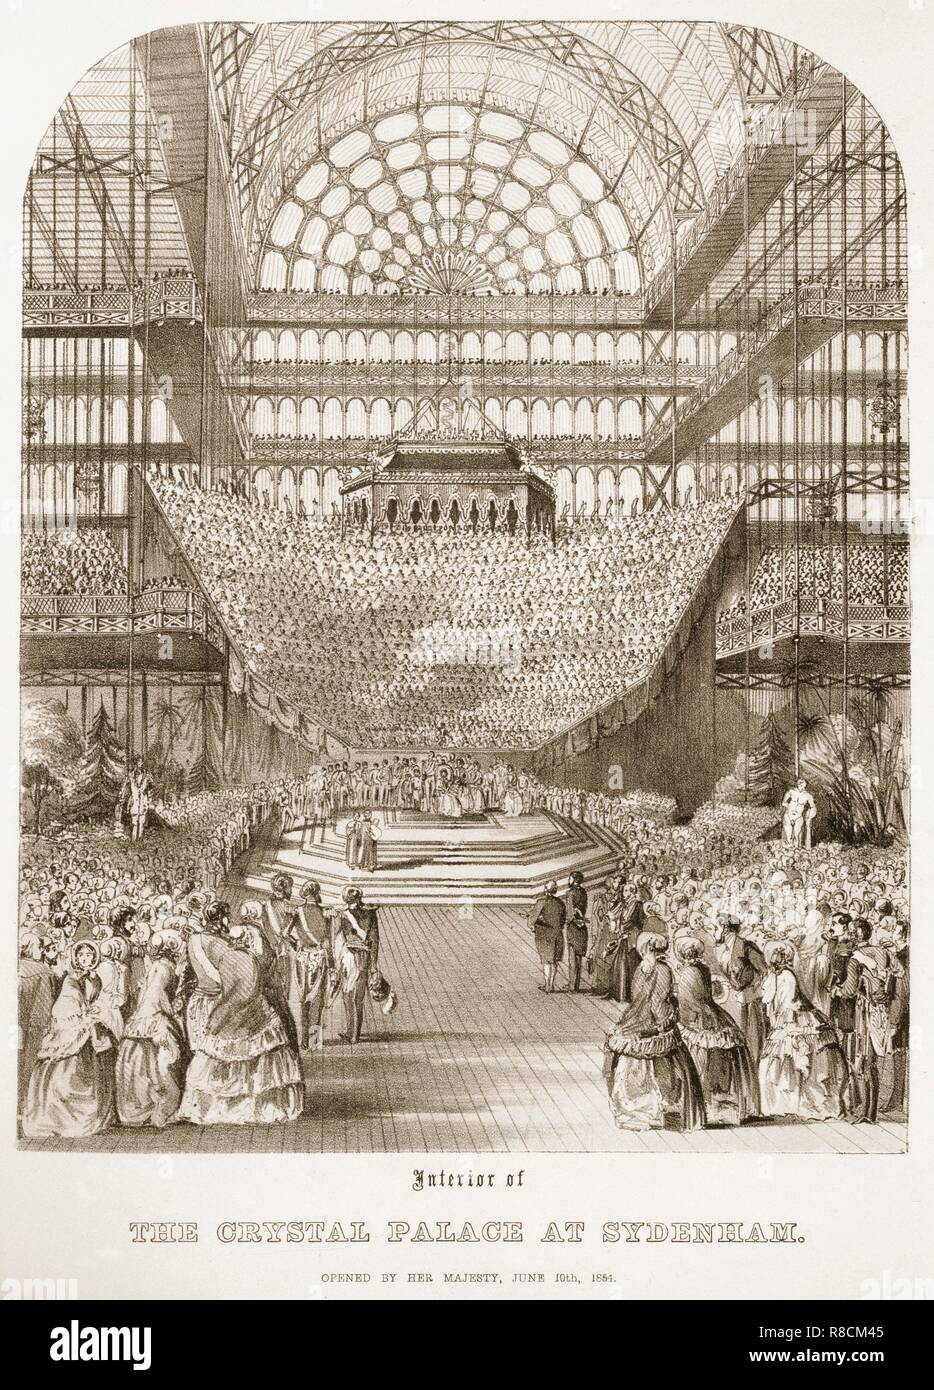 Eröffnung des Crystal Palace in Sydenham von Königin Victoria am 10. Juni 1854. Schöpfer: Thomas Hosmer Shepherd (1792-1864). Stockfoto